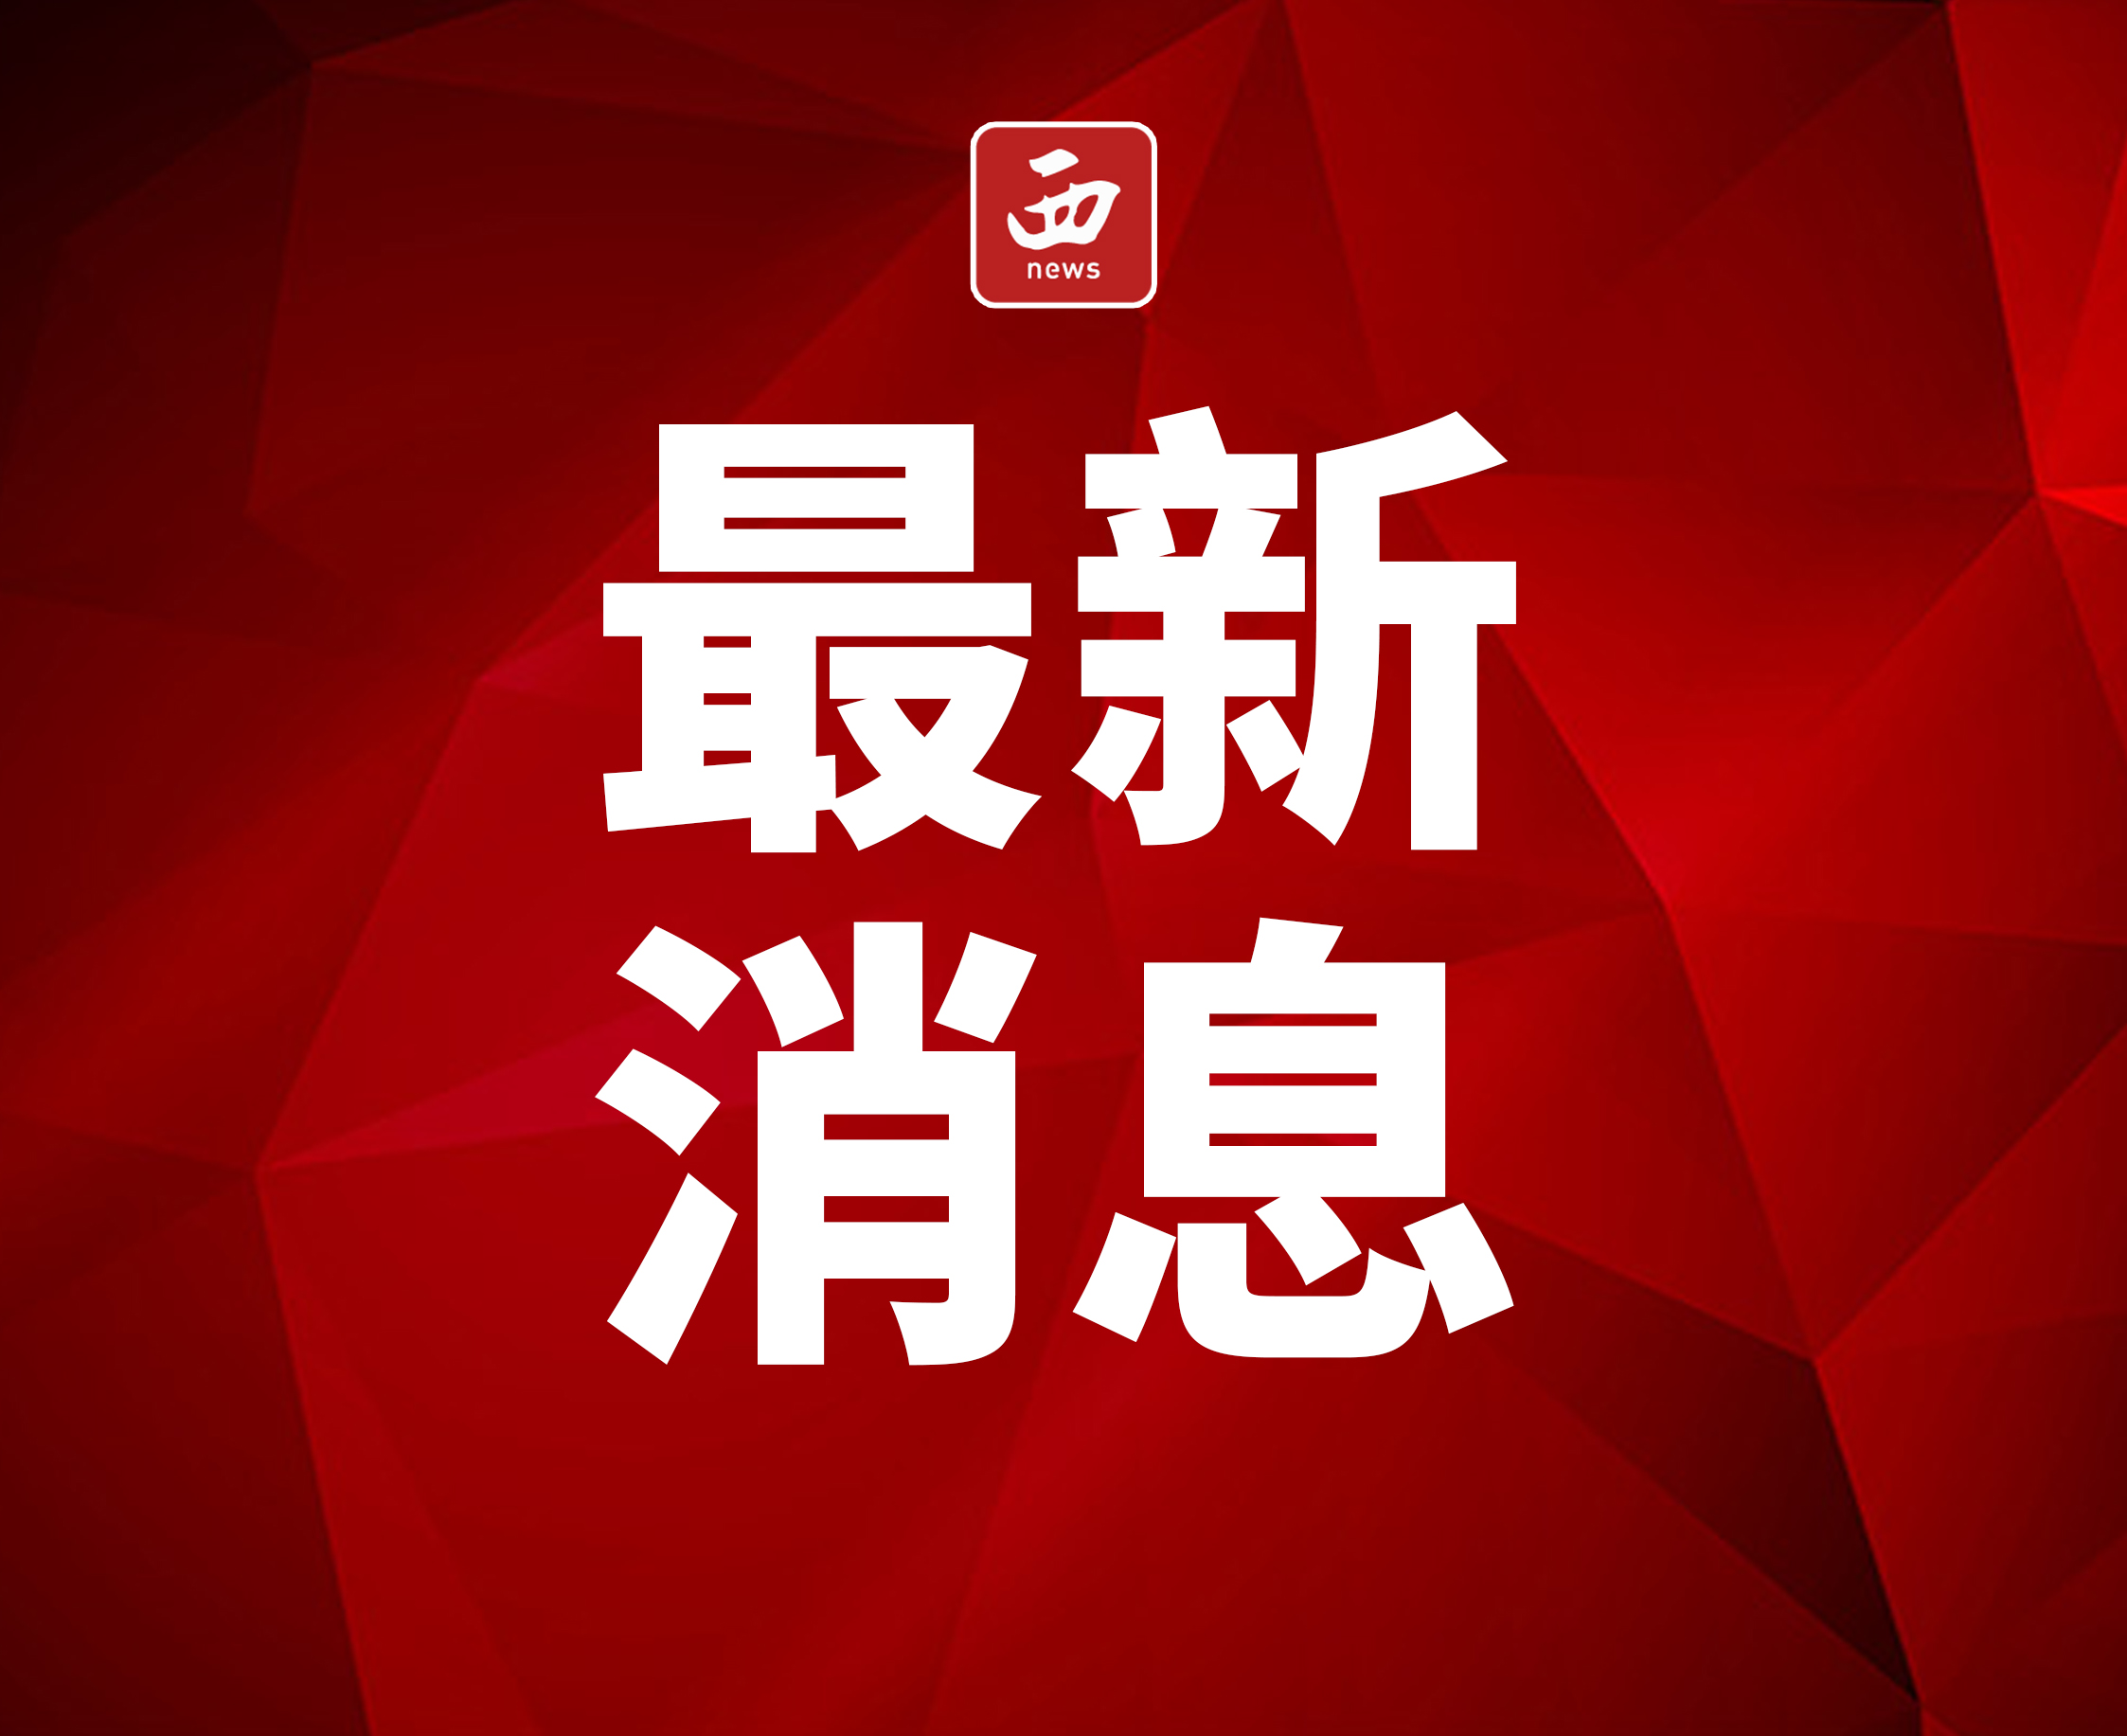 龙湖成立29周年开启“宠粉节” 亿元钜惠福利大放送